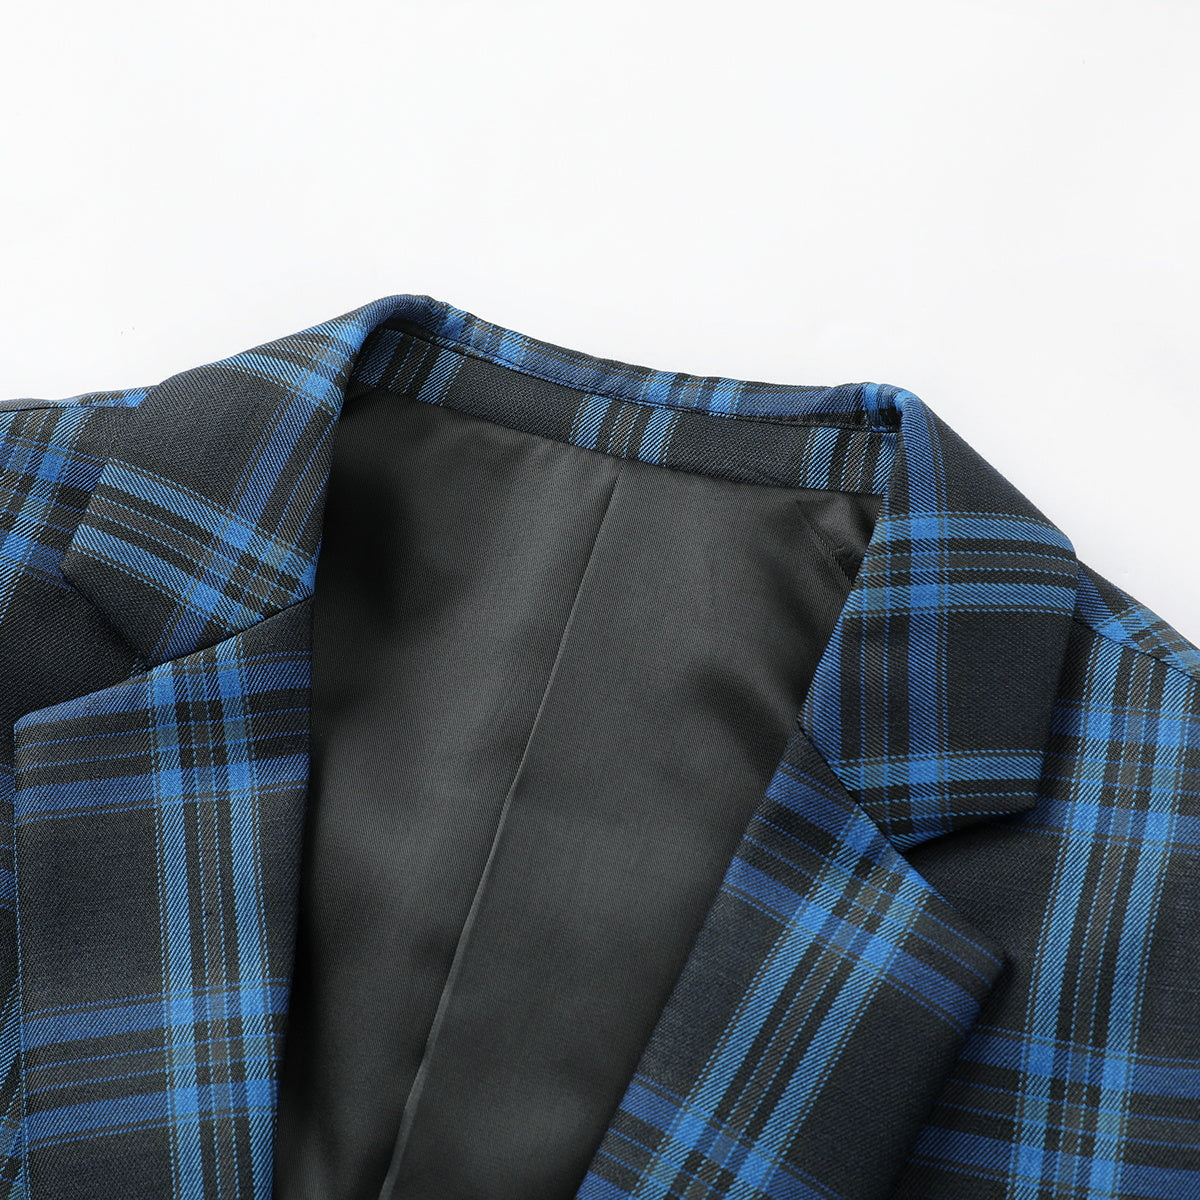 Plaid Stripe Suit Slim Fit 2-Piece Suit Blue